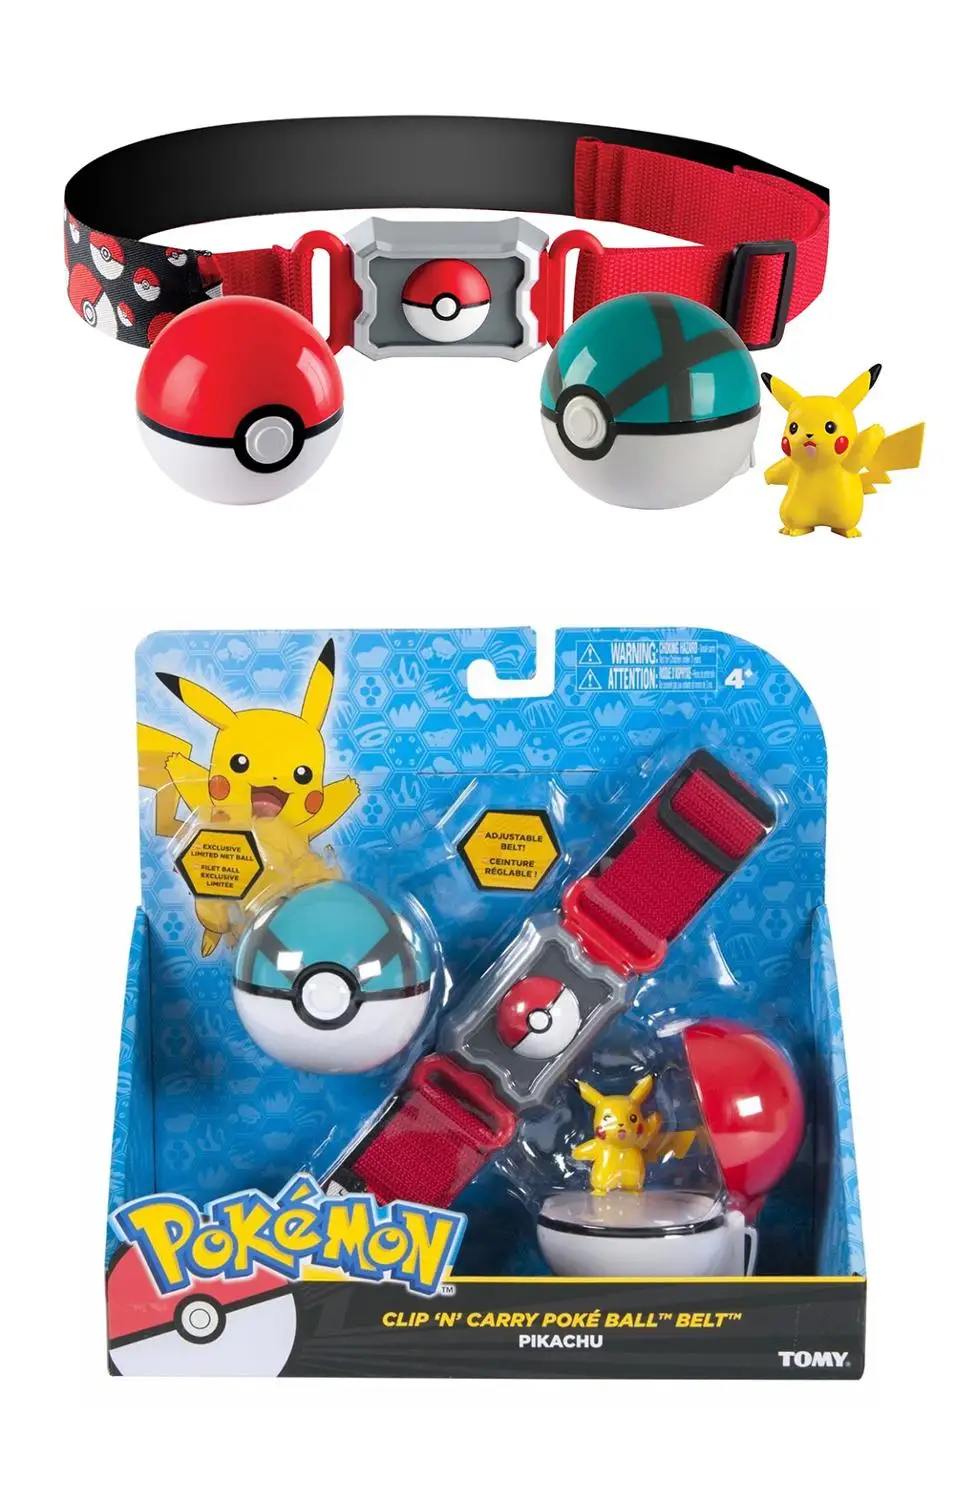 Pokemones мяч игрушки Pokeball с поясом фигурка модель игрушки Pokemones фигурки Выдвижной Пояс подарки для детей Детские игрушки - Цвет: Set 1 with box